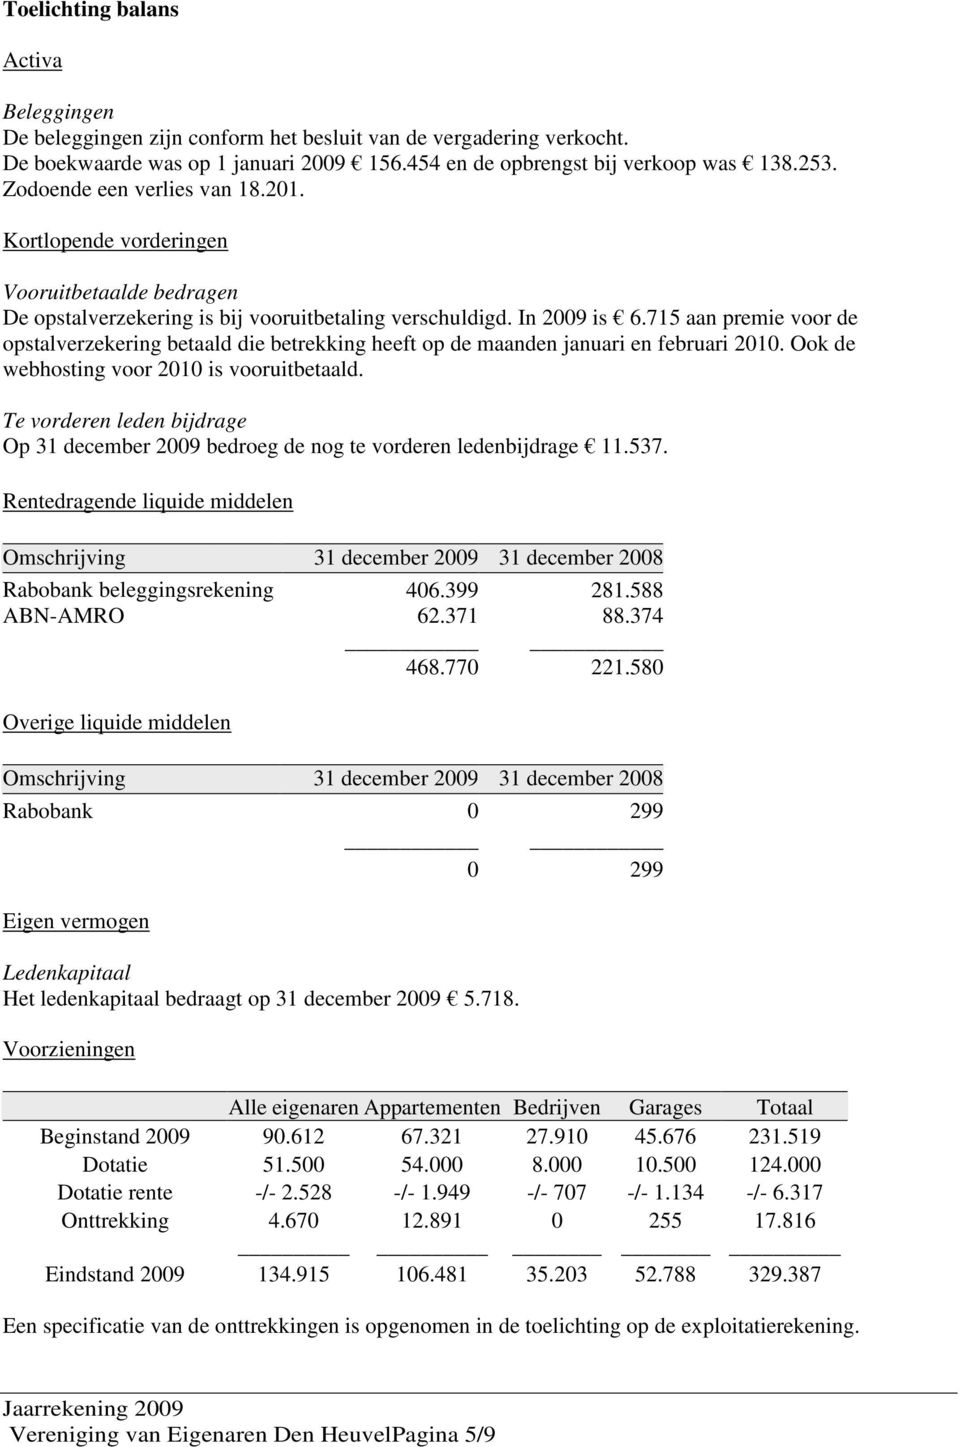 715 aan premie voor de opstalverzekering betaald die betrekking heeft op de maanden januari en februari 2010. Ook de webhosting voor 2010 is vooruitbetaald.